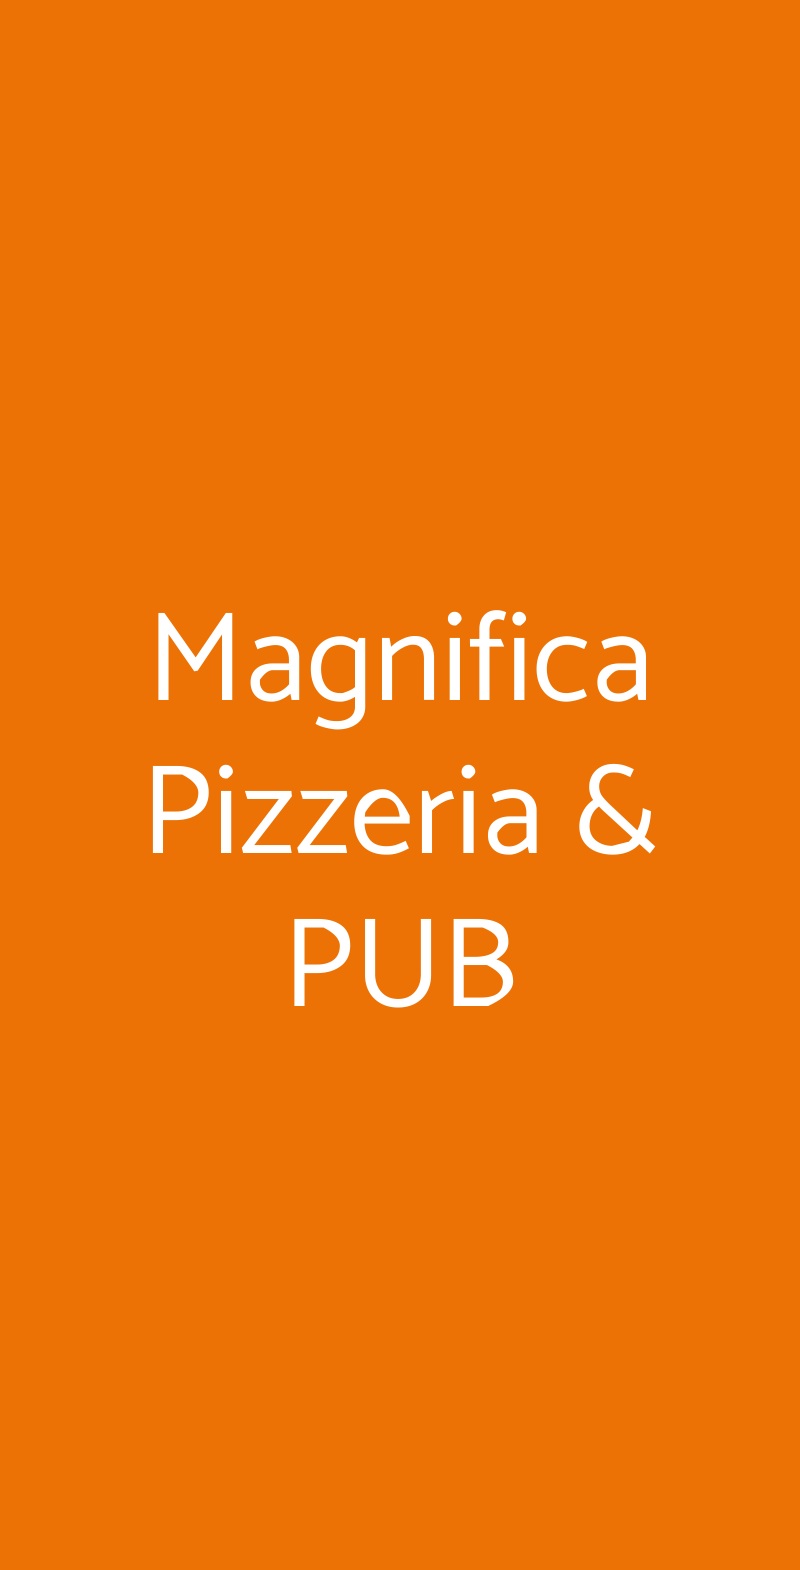 Magnifica Pizzeria & PUB Napoli menù 1 pagina